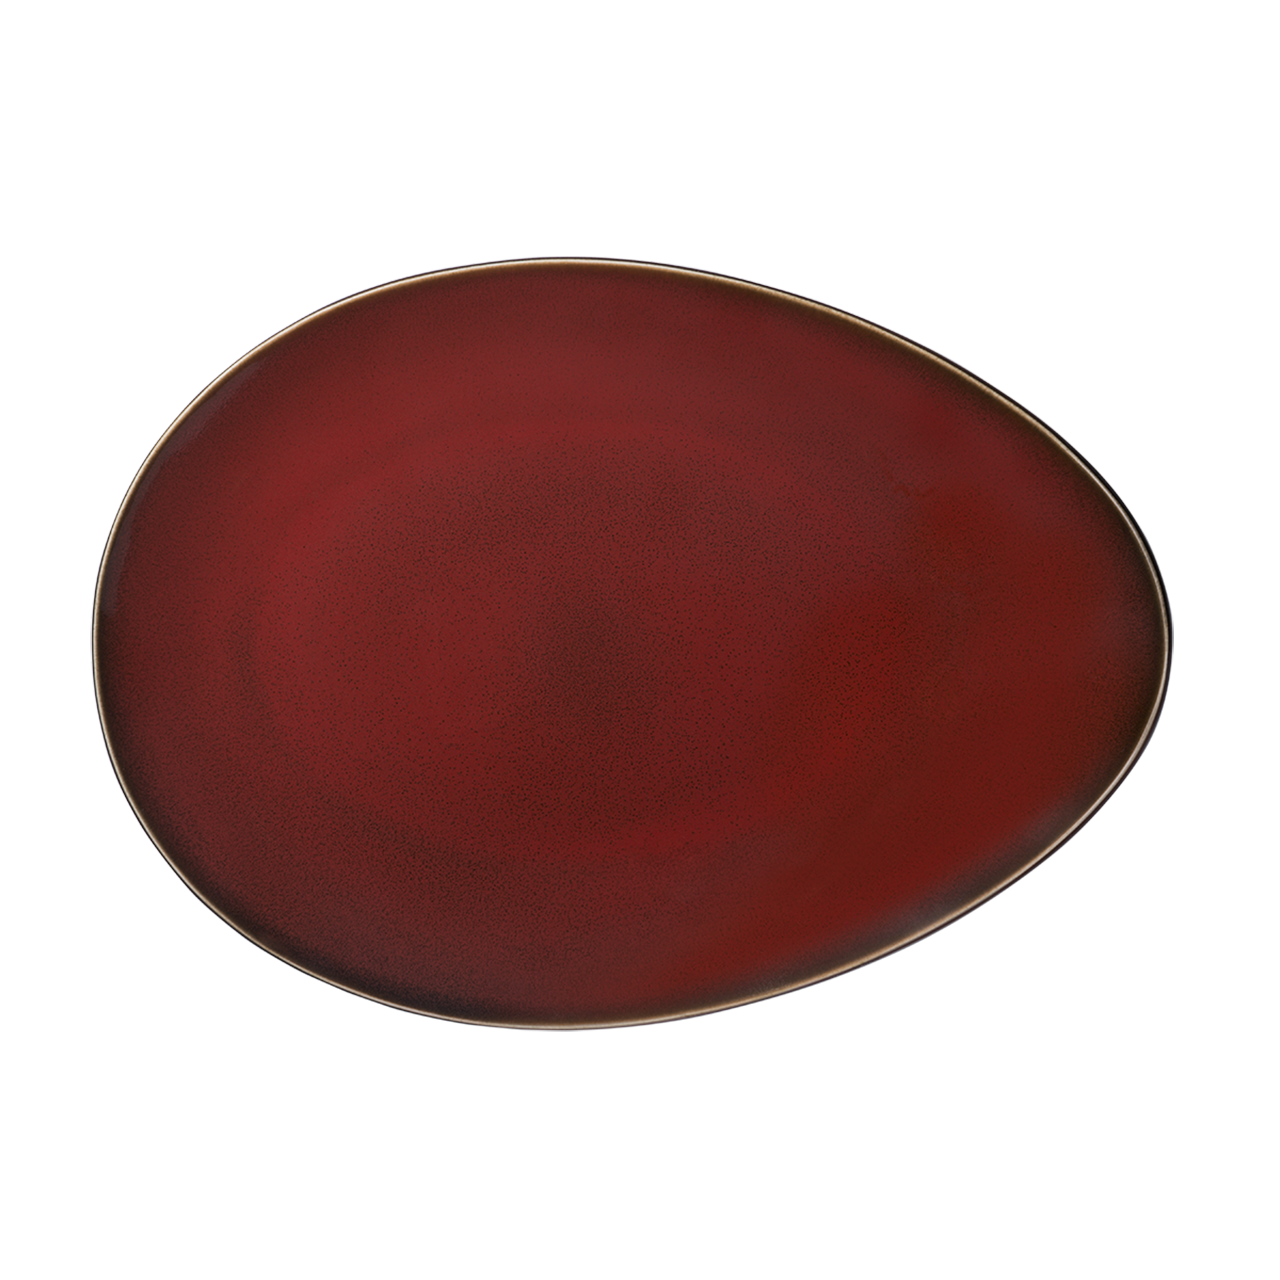 Rustic - Plate 35.5cm